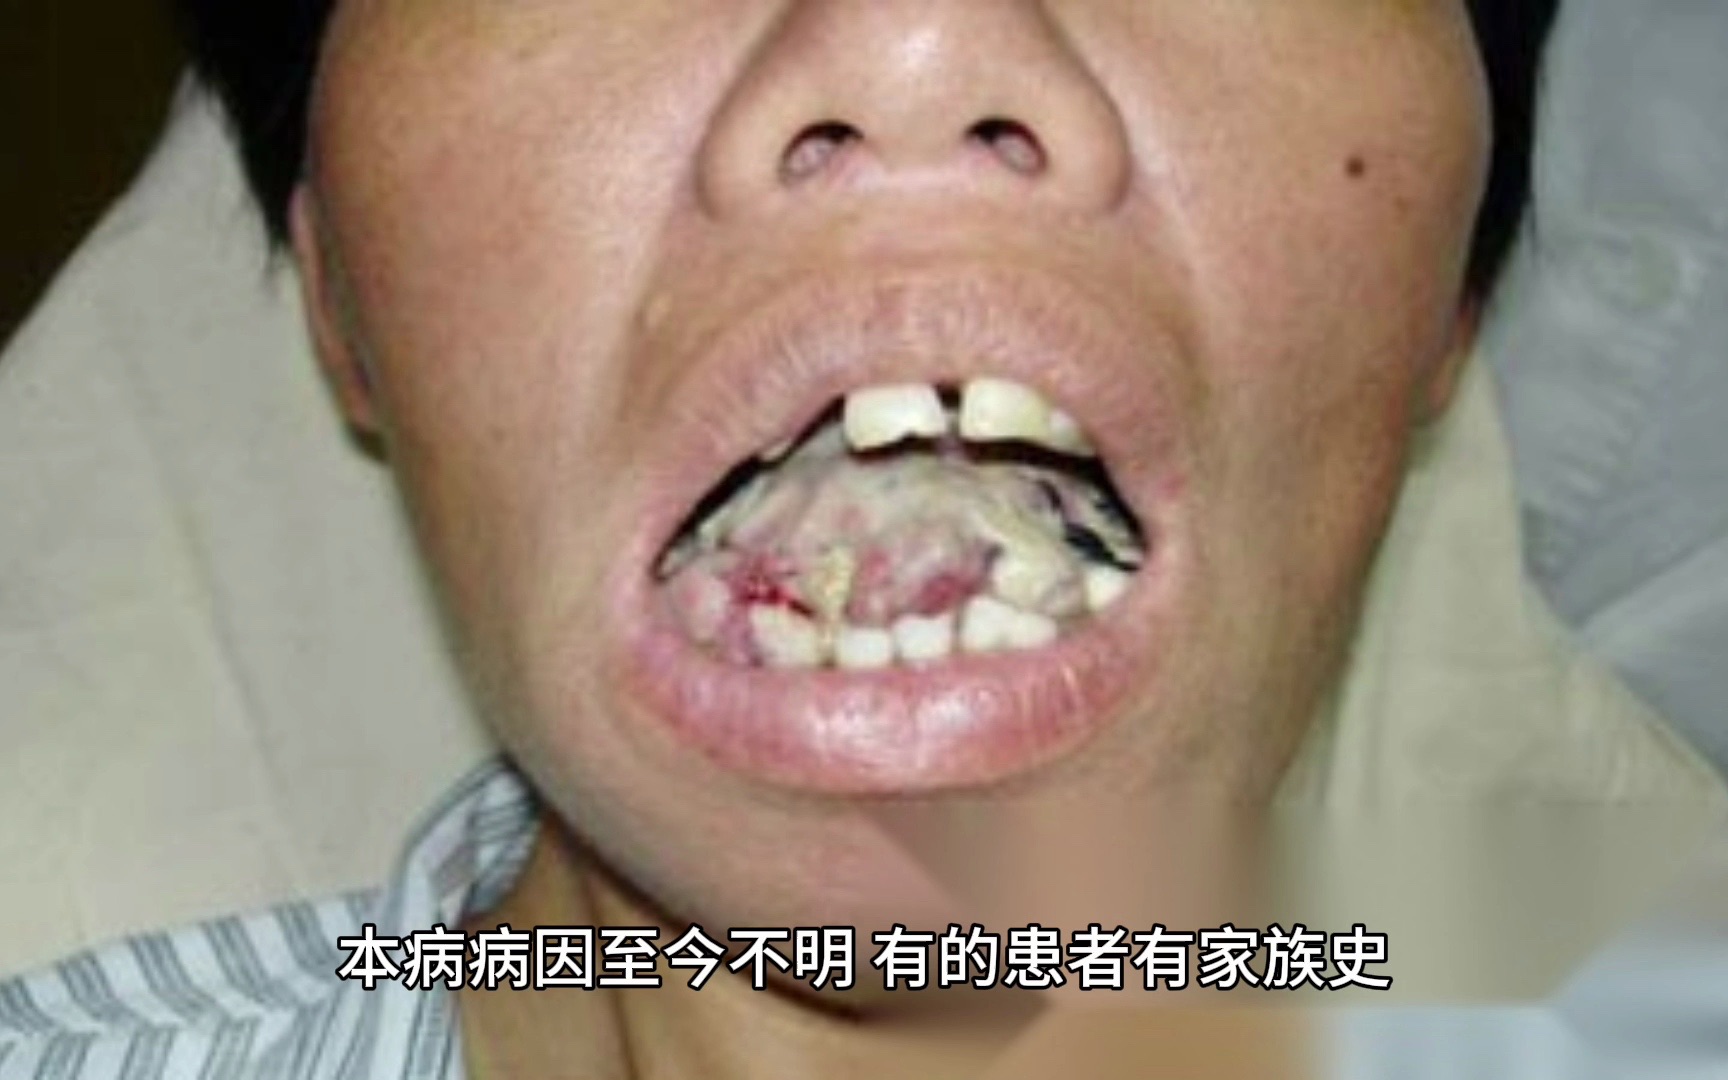 96 牙龈纤维瘤病